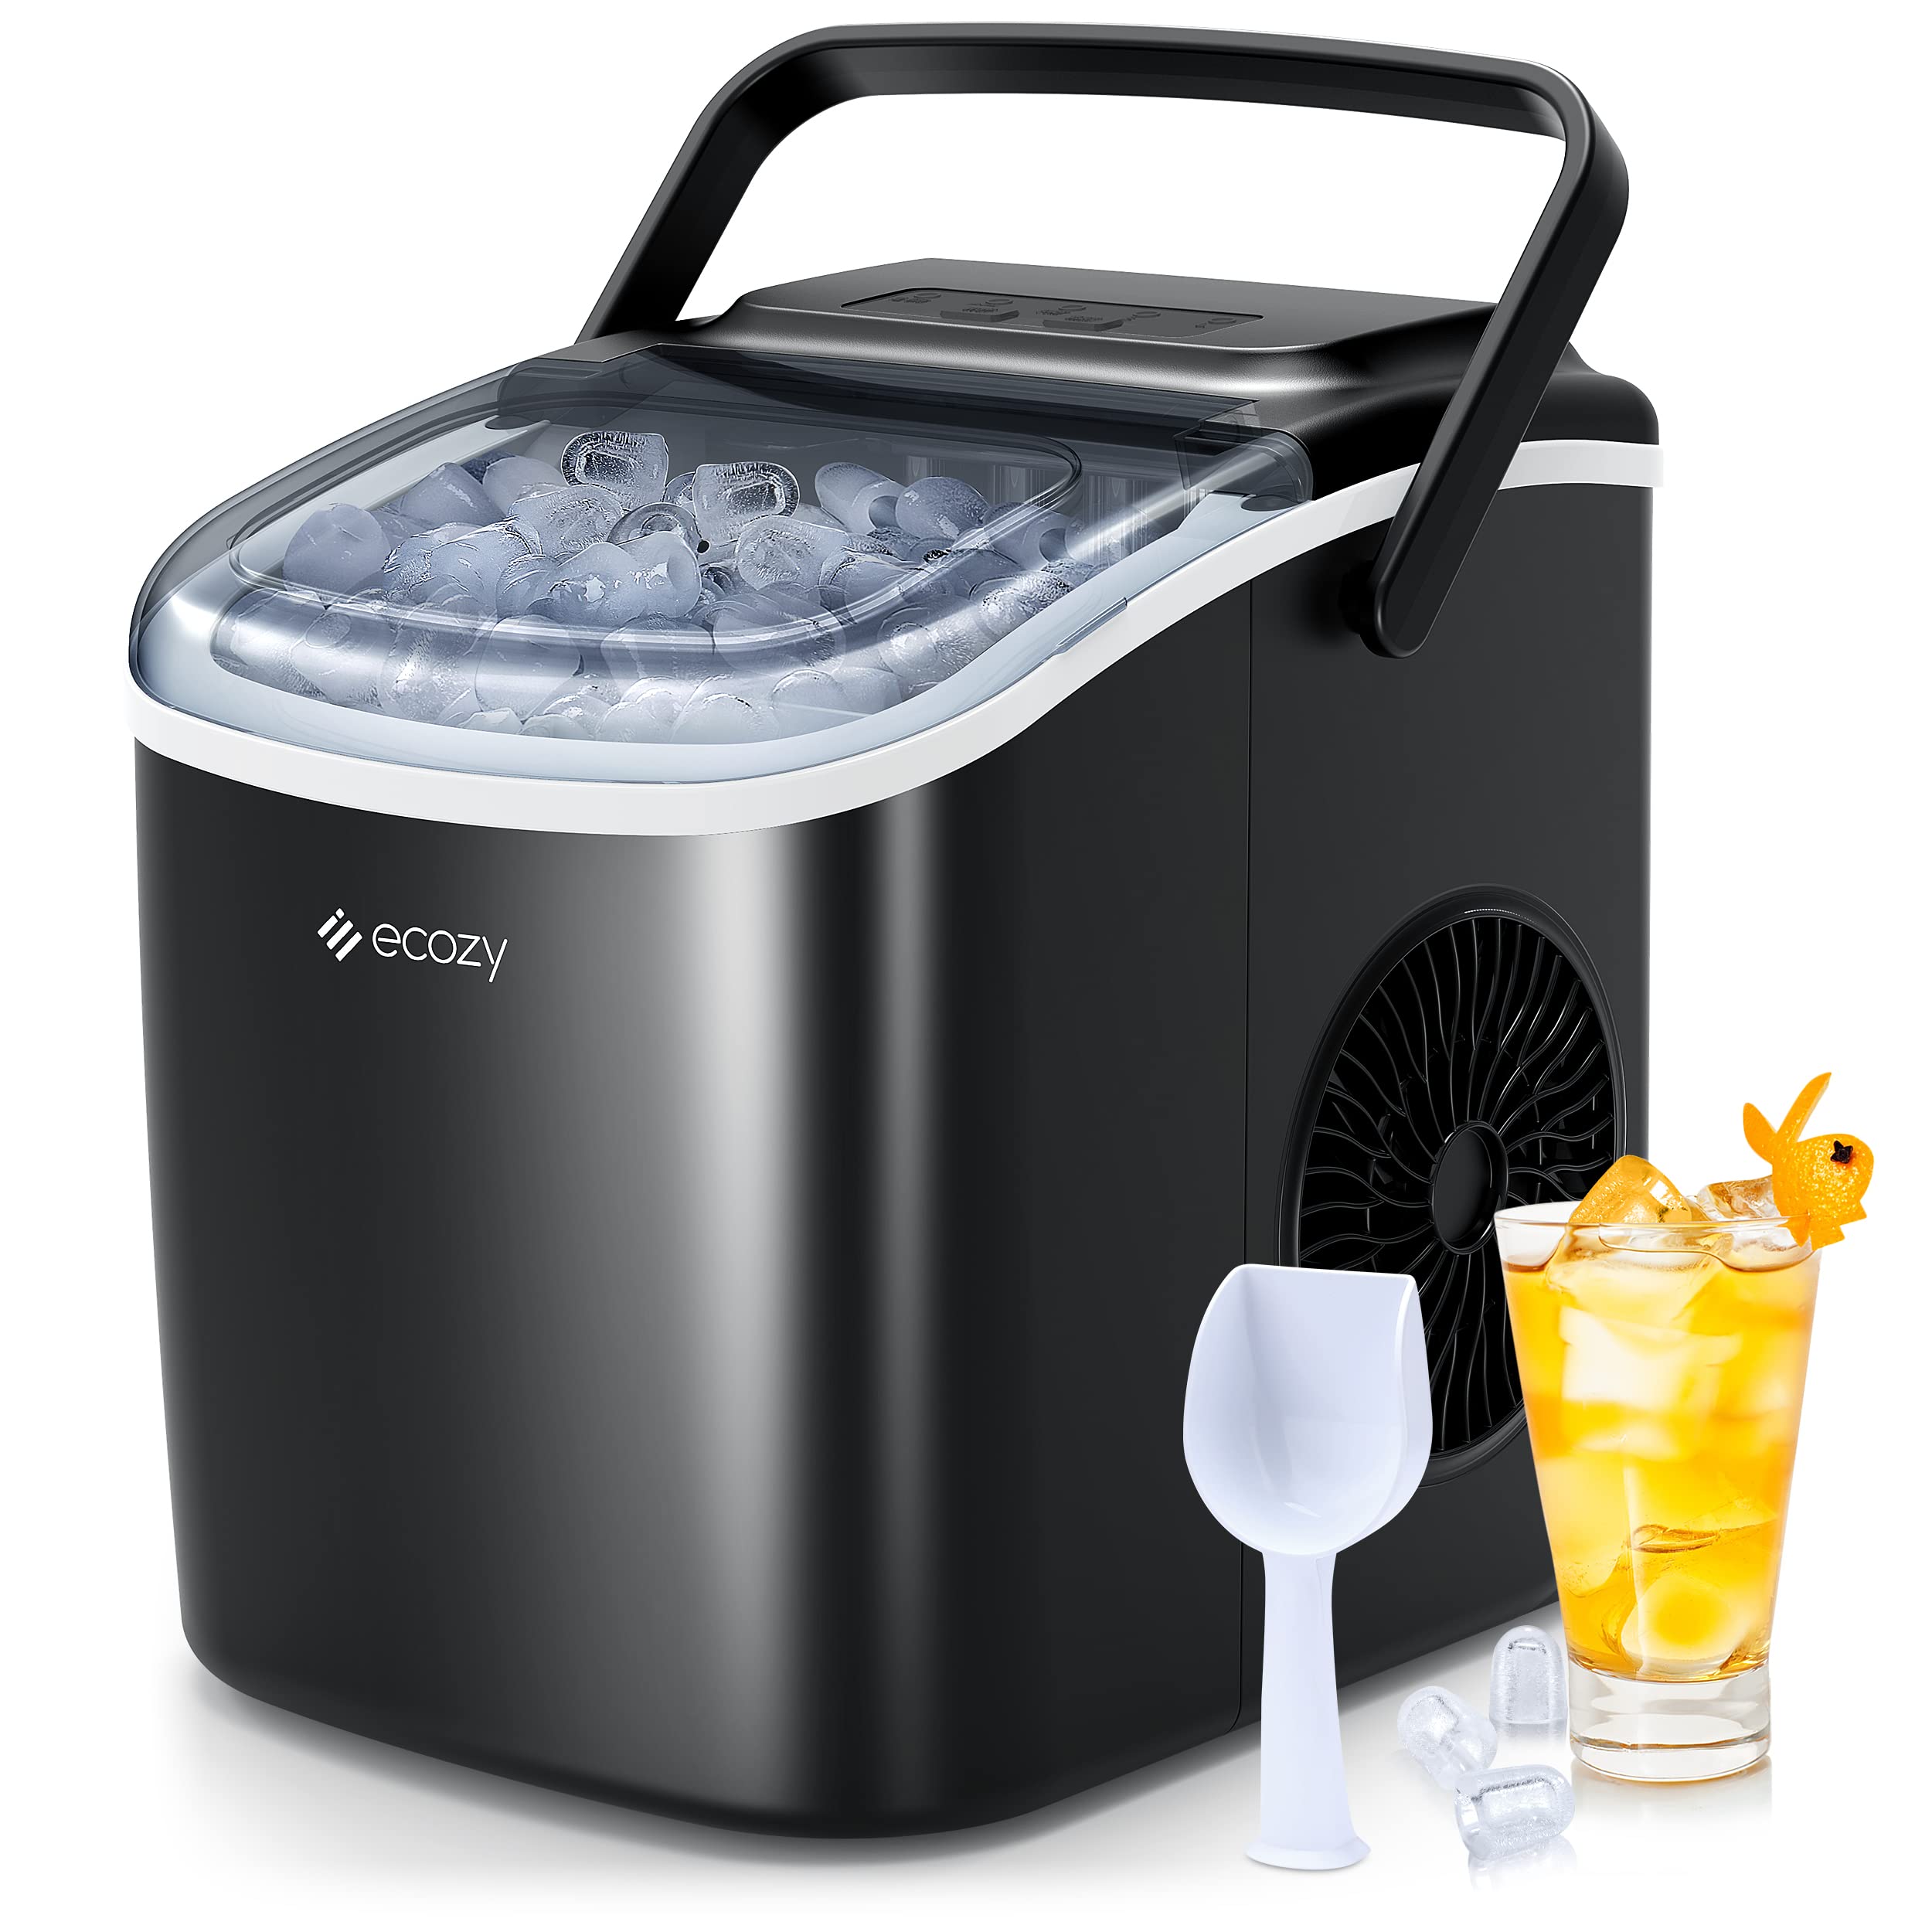 ecozy 便携式台面制冰机 - 6 分钟内制冰 9 块，日产量 26 磅，带冰袋、勺子和篮子自动清洁，适用于厨房、办公室、酒吧、派对 - 黑色